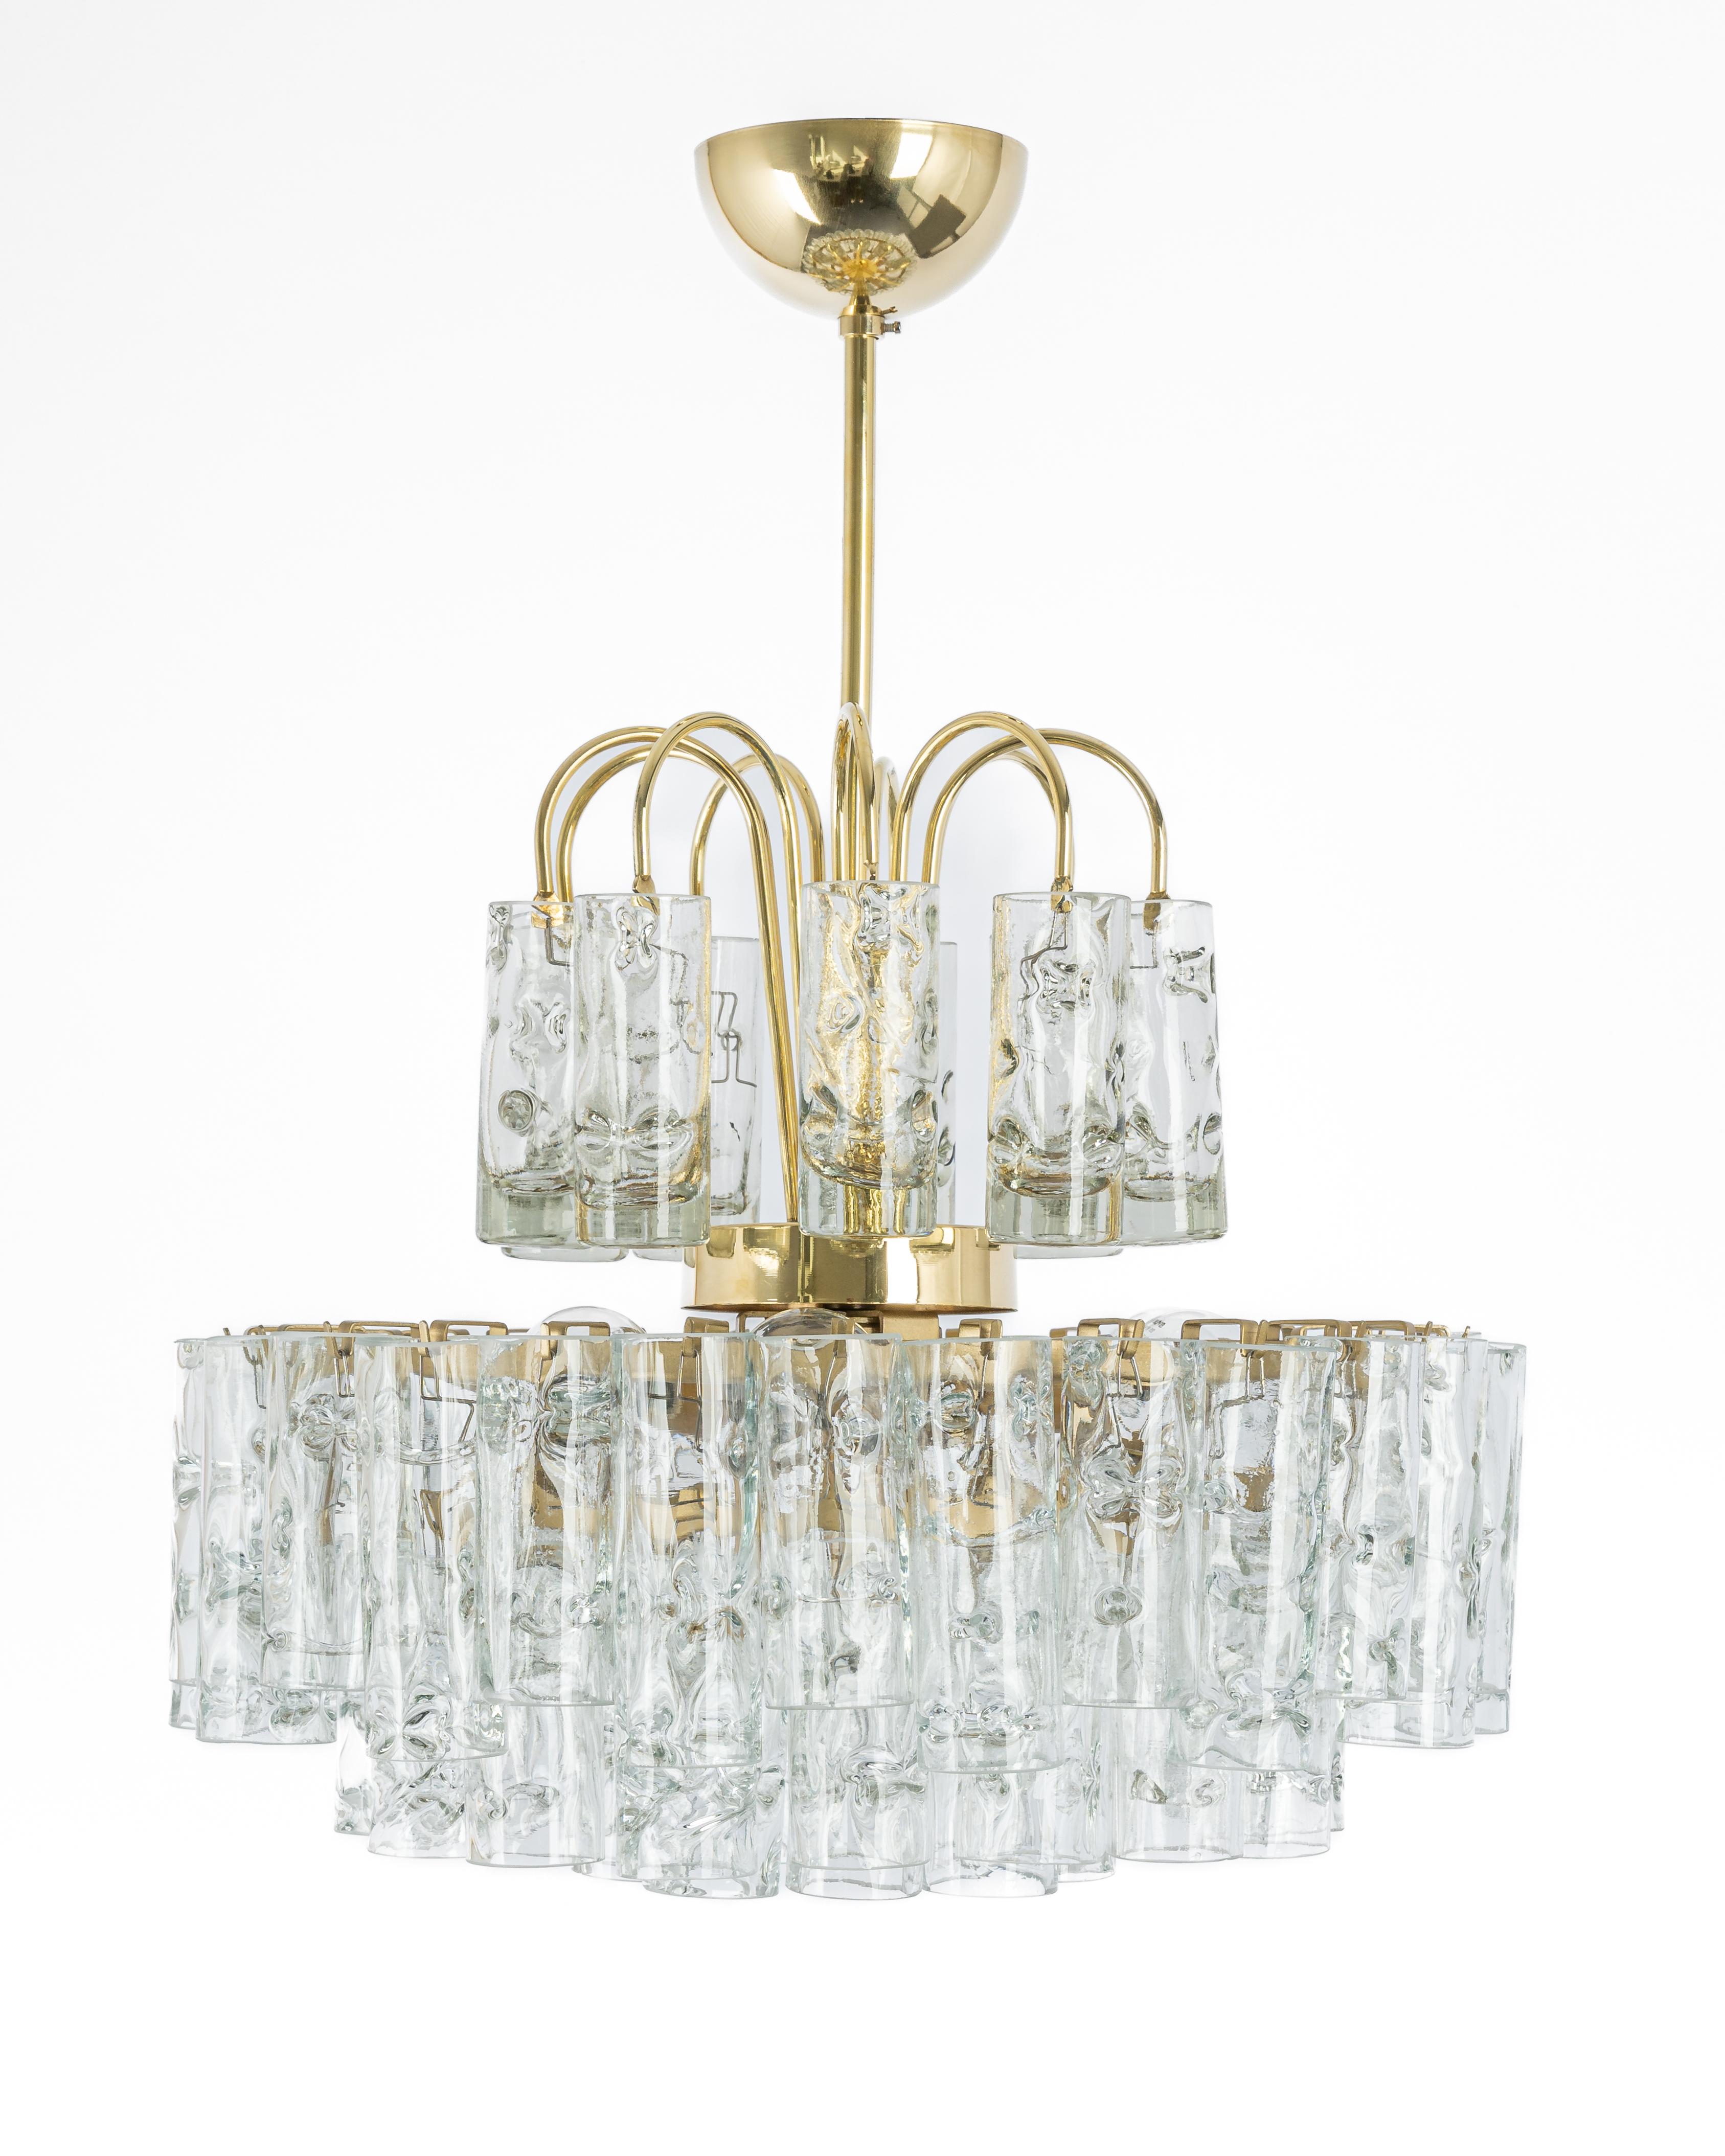 Fantastischer vierstöckiger Kronleuchter aus der Mitte des Jahrhunderts von Doria, hergestellt in Deutschland, ca. 1960-1969. An der Leuchte hängende Murano-Glaszylinder.

Hochwertig und in sehr gutem Zustand. Gereinigt, gut verkabelt und